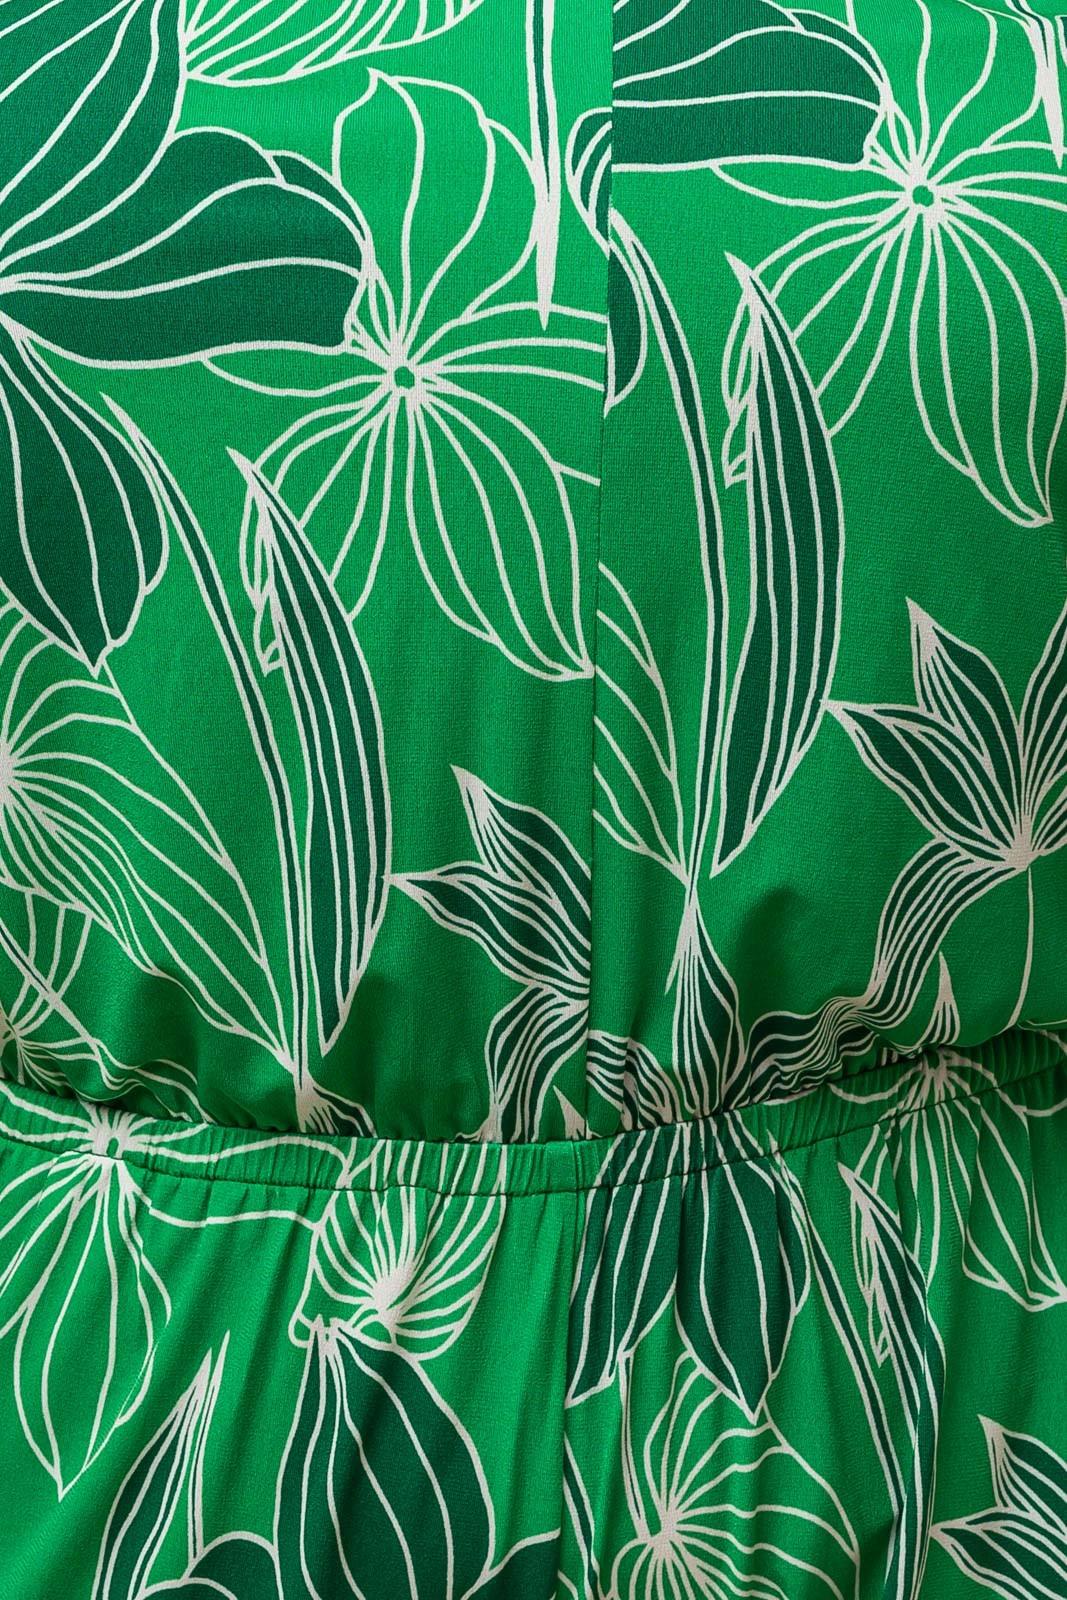 PLUS leaf print halte jumpsuit - alomfejto